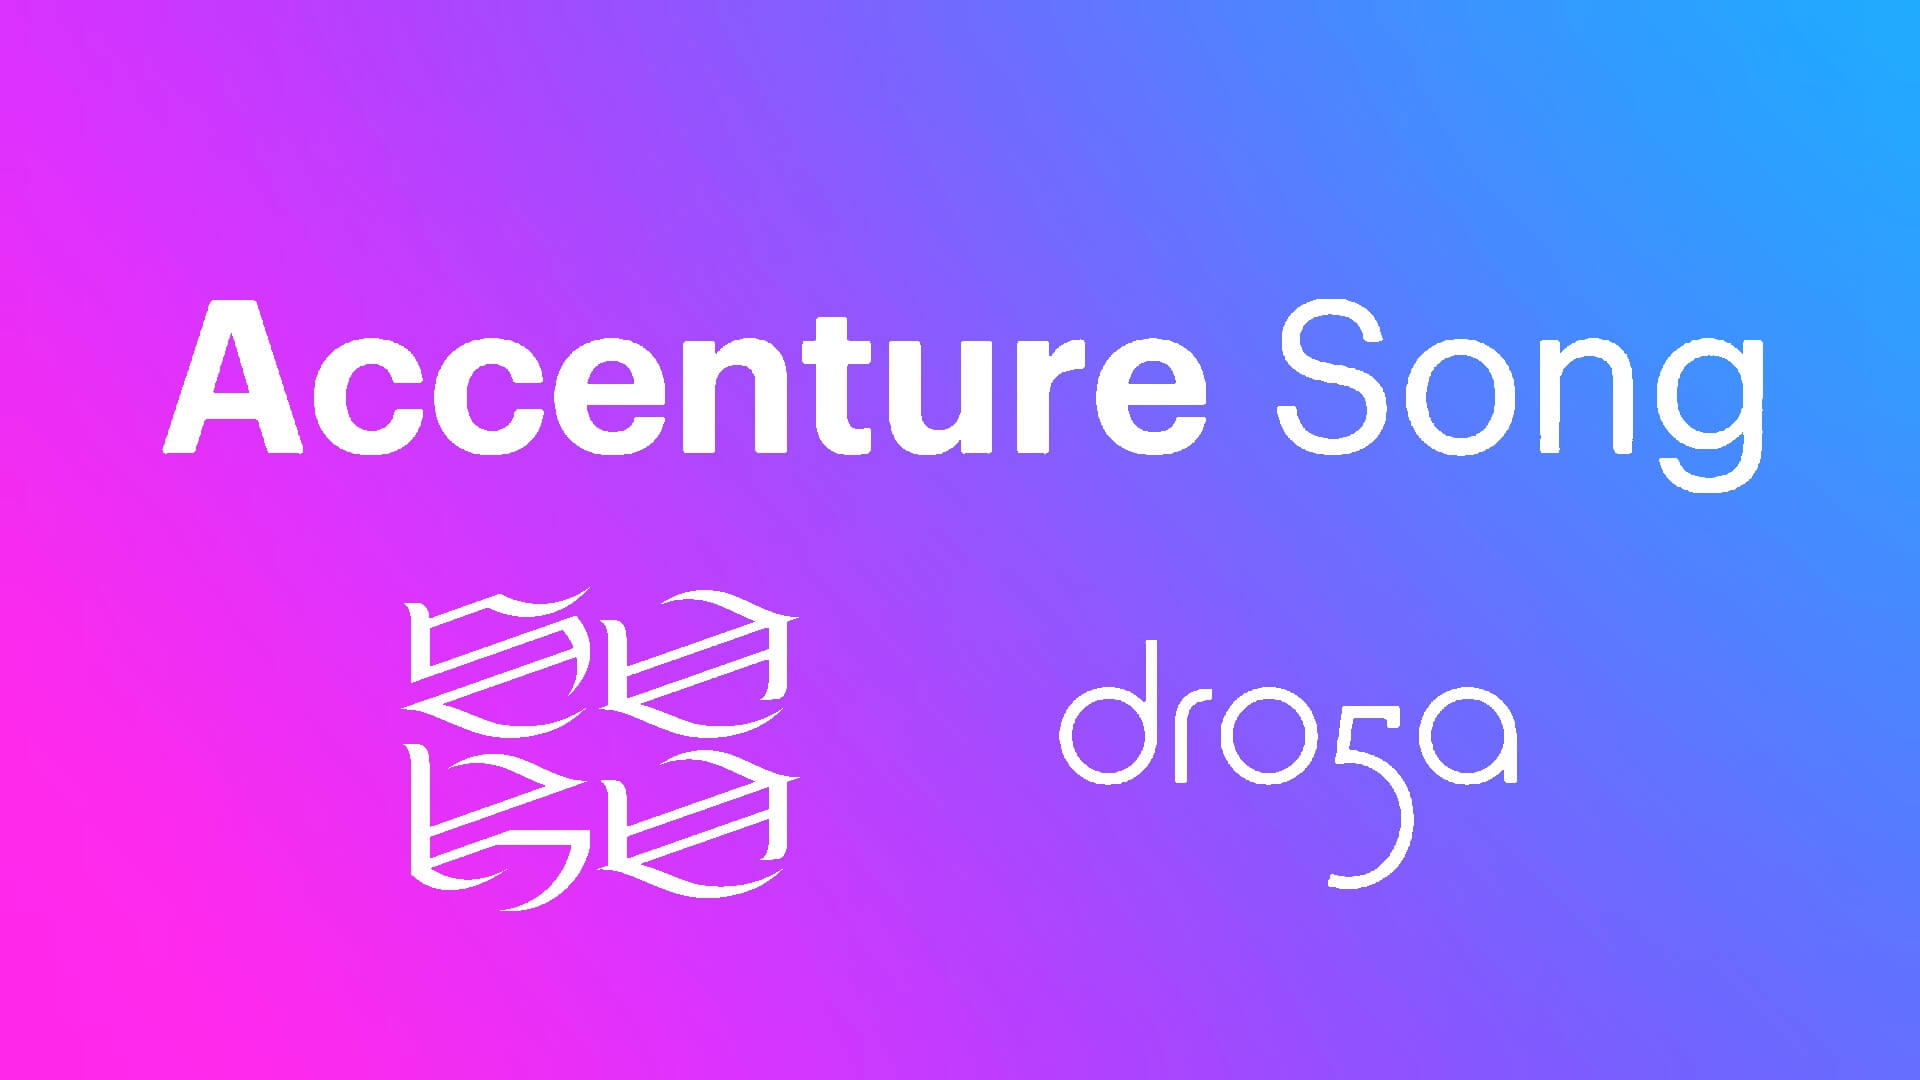 Droga5 em expansão: Accenture Song anuncia interesse em adquirir a SOKO